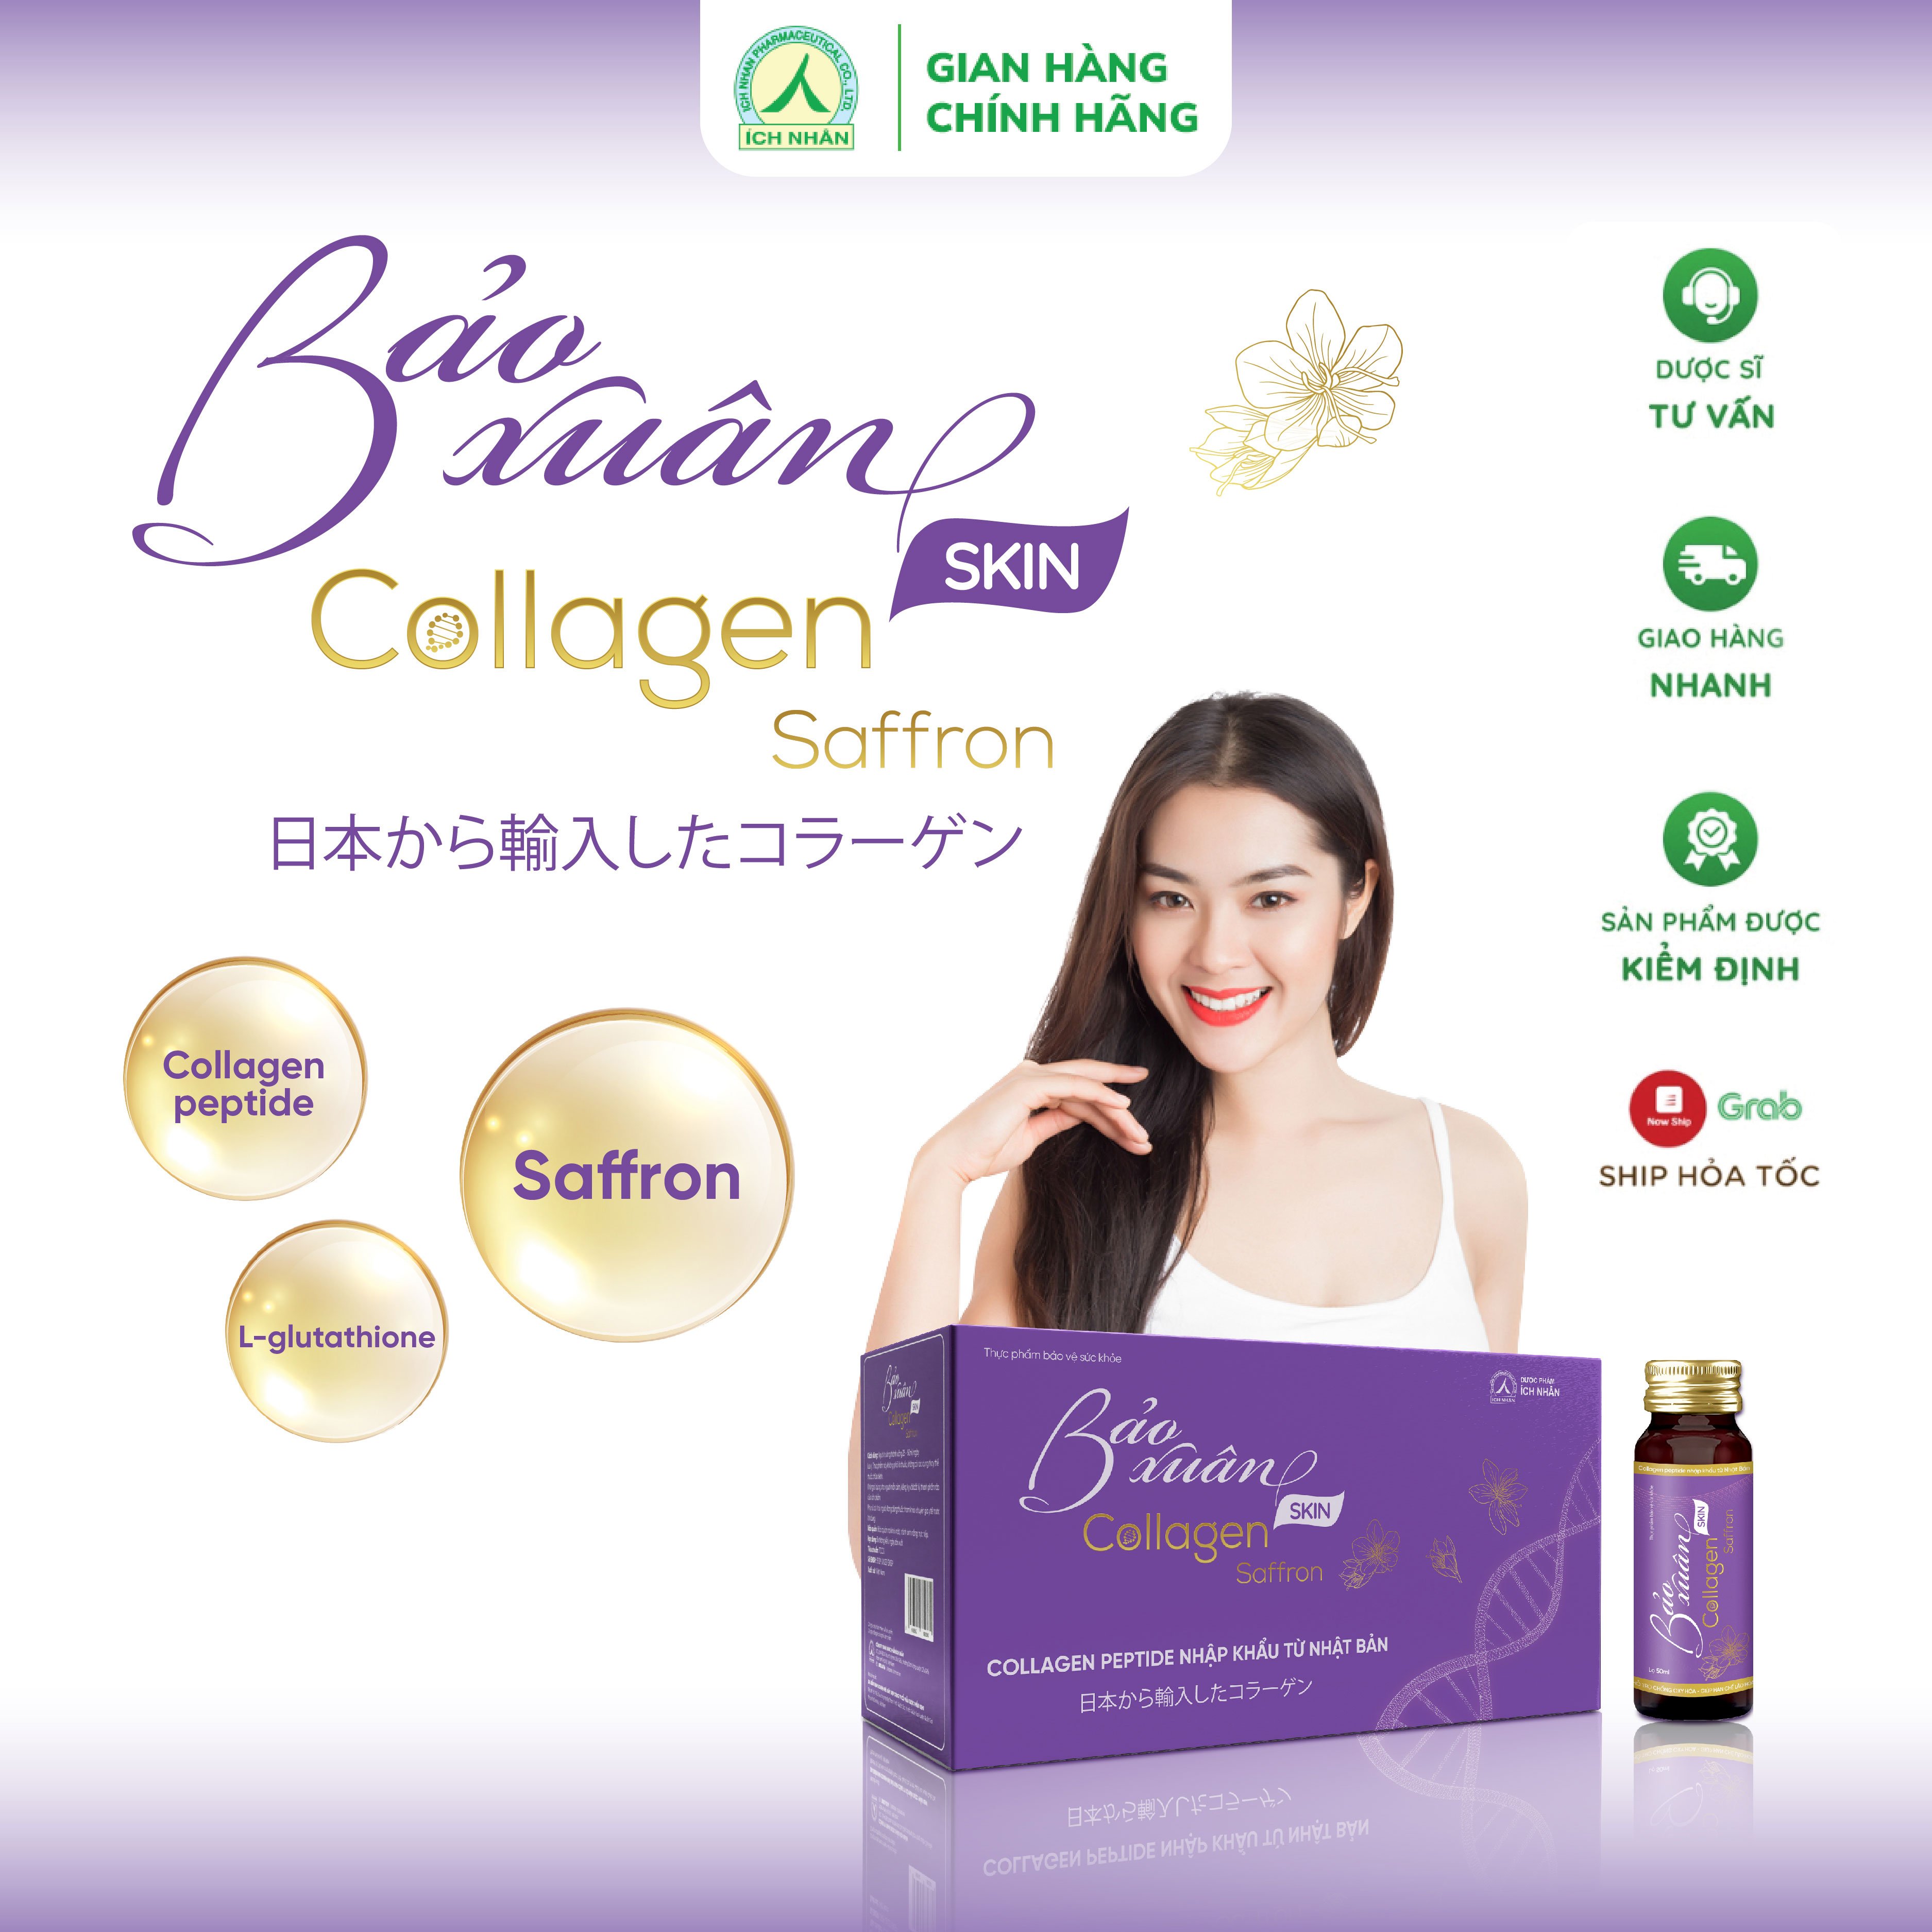 Nước Uống Bổ Sung Bảo Xuân Skin Collagen Saffron giúp hạn chế lão hóa, tăng đàn hồi cho da, làm sáng đẹp da 10 Lọ x 50ml